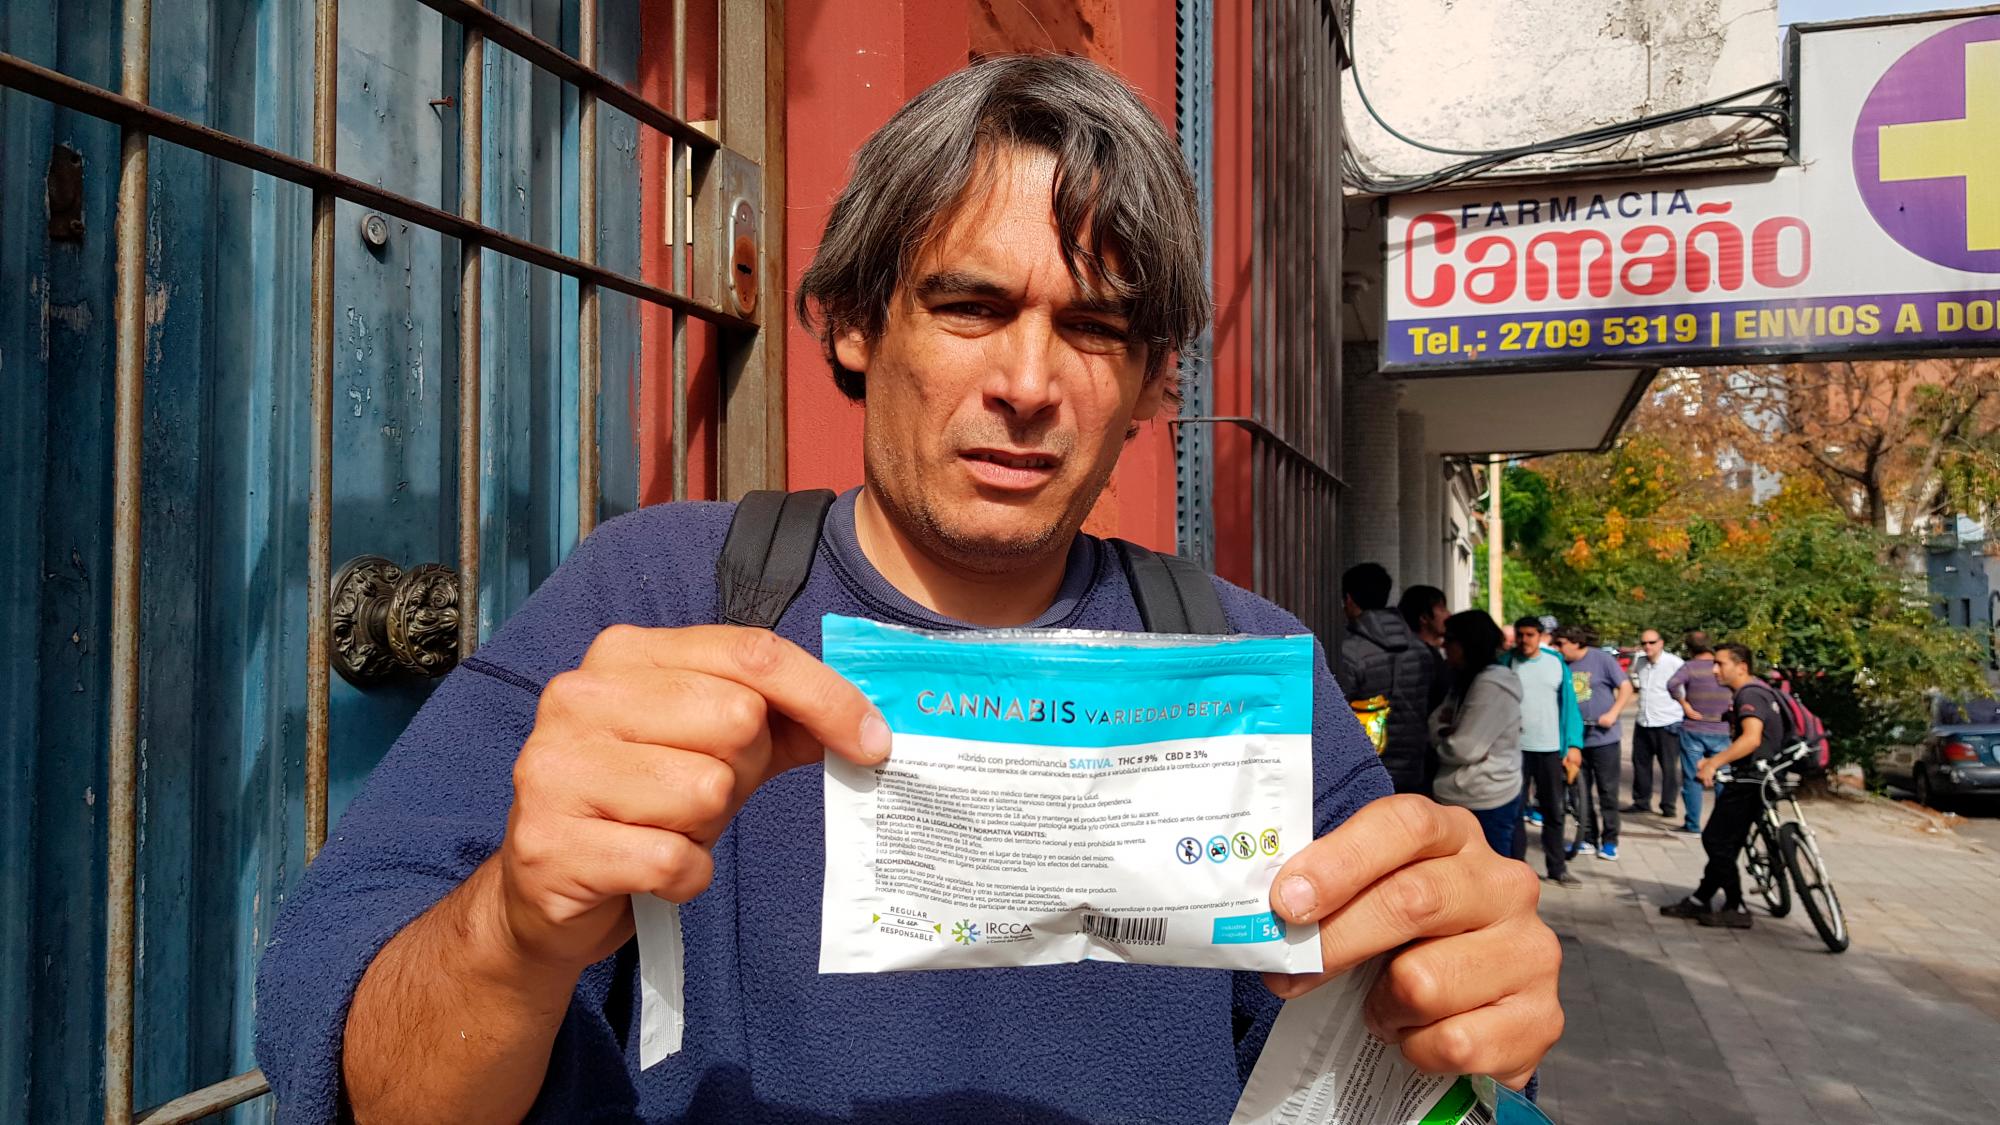 Borland muestra un paquete de marihuana recién comprado en una farmacia de Montevideo. Al fondo varios consumidores esperando su turno para adquirir el producto. 